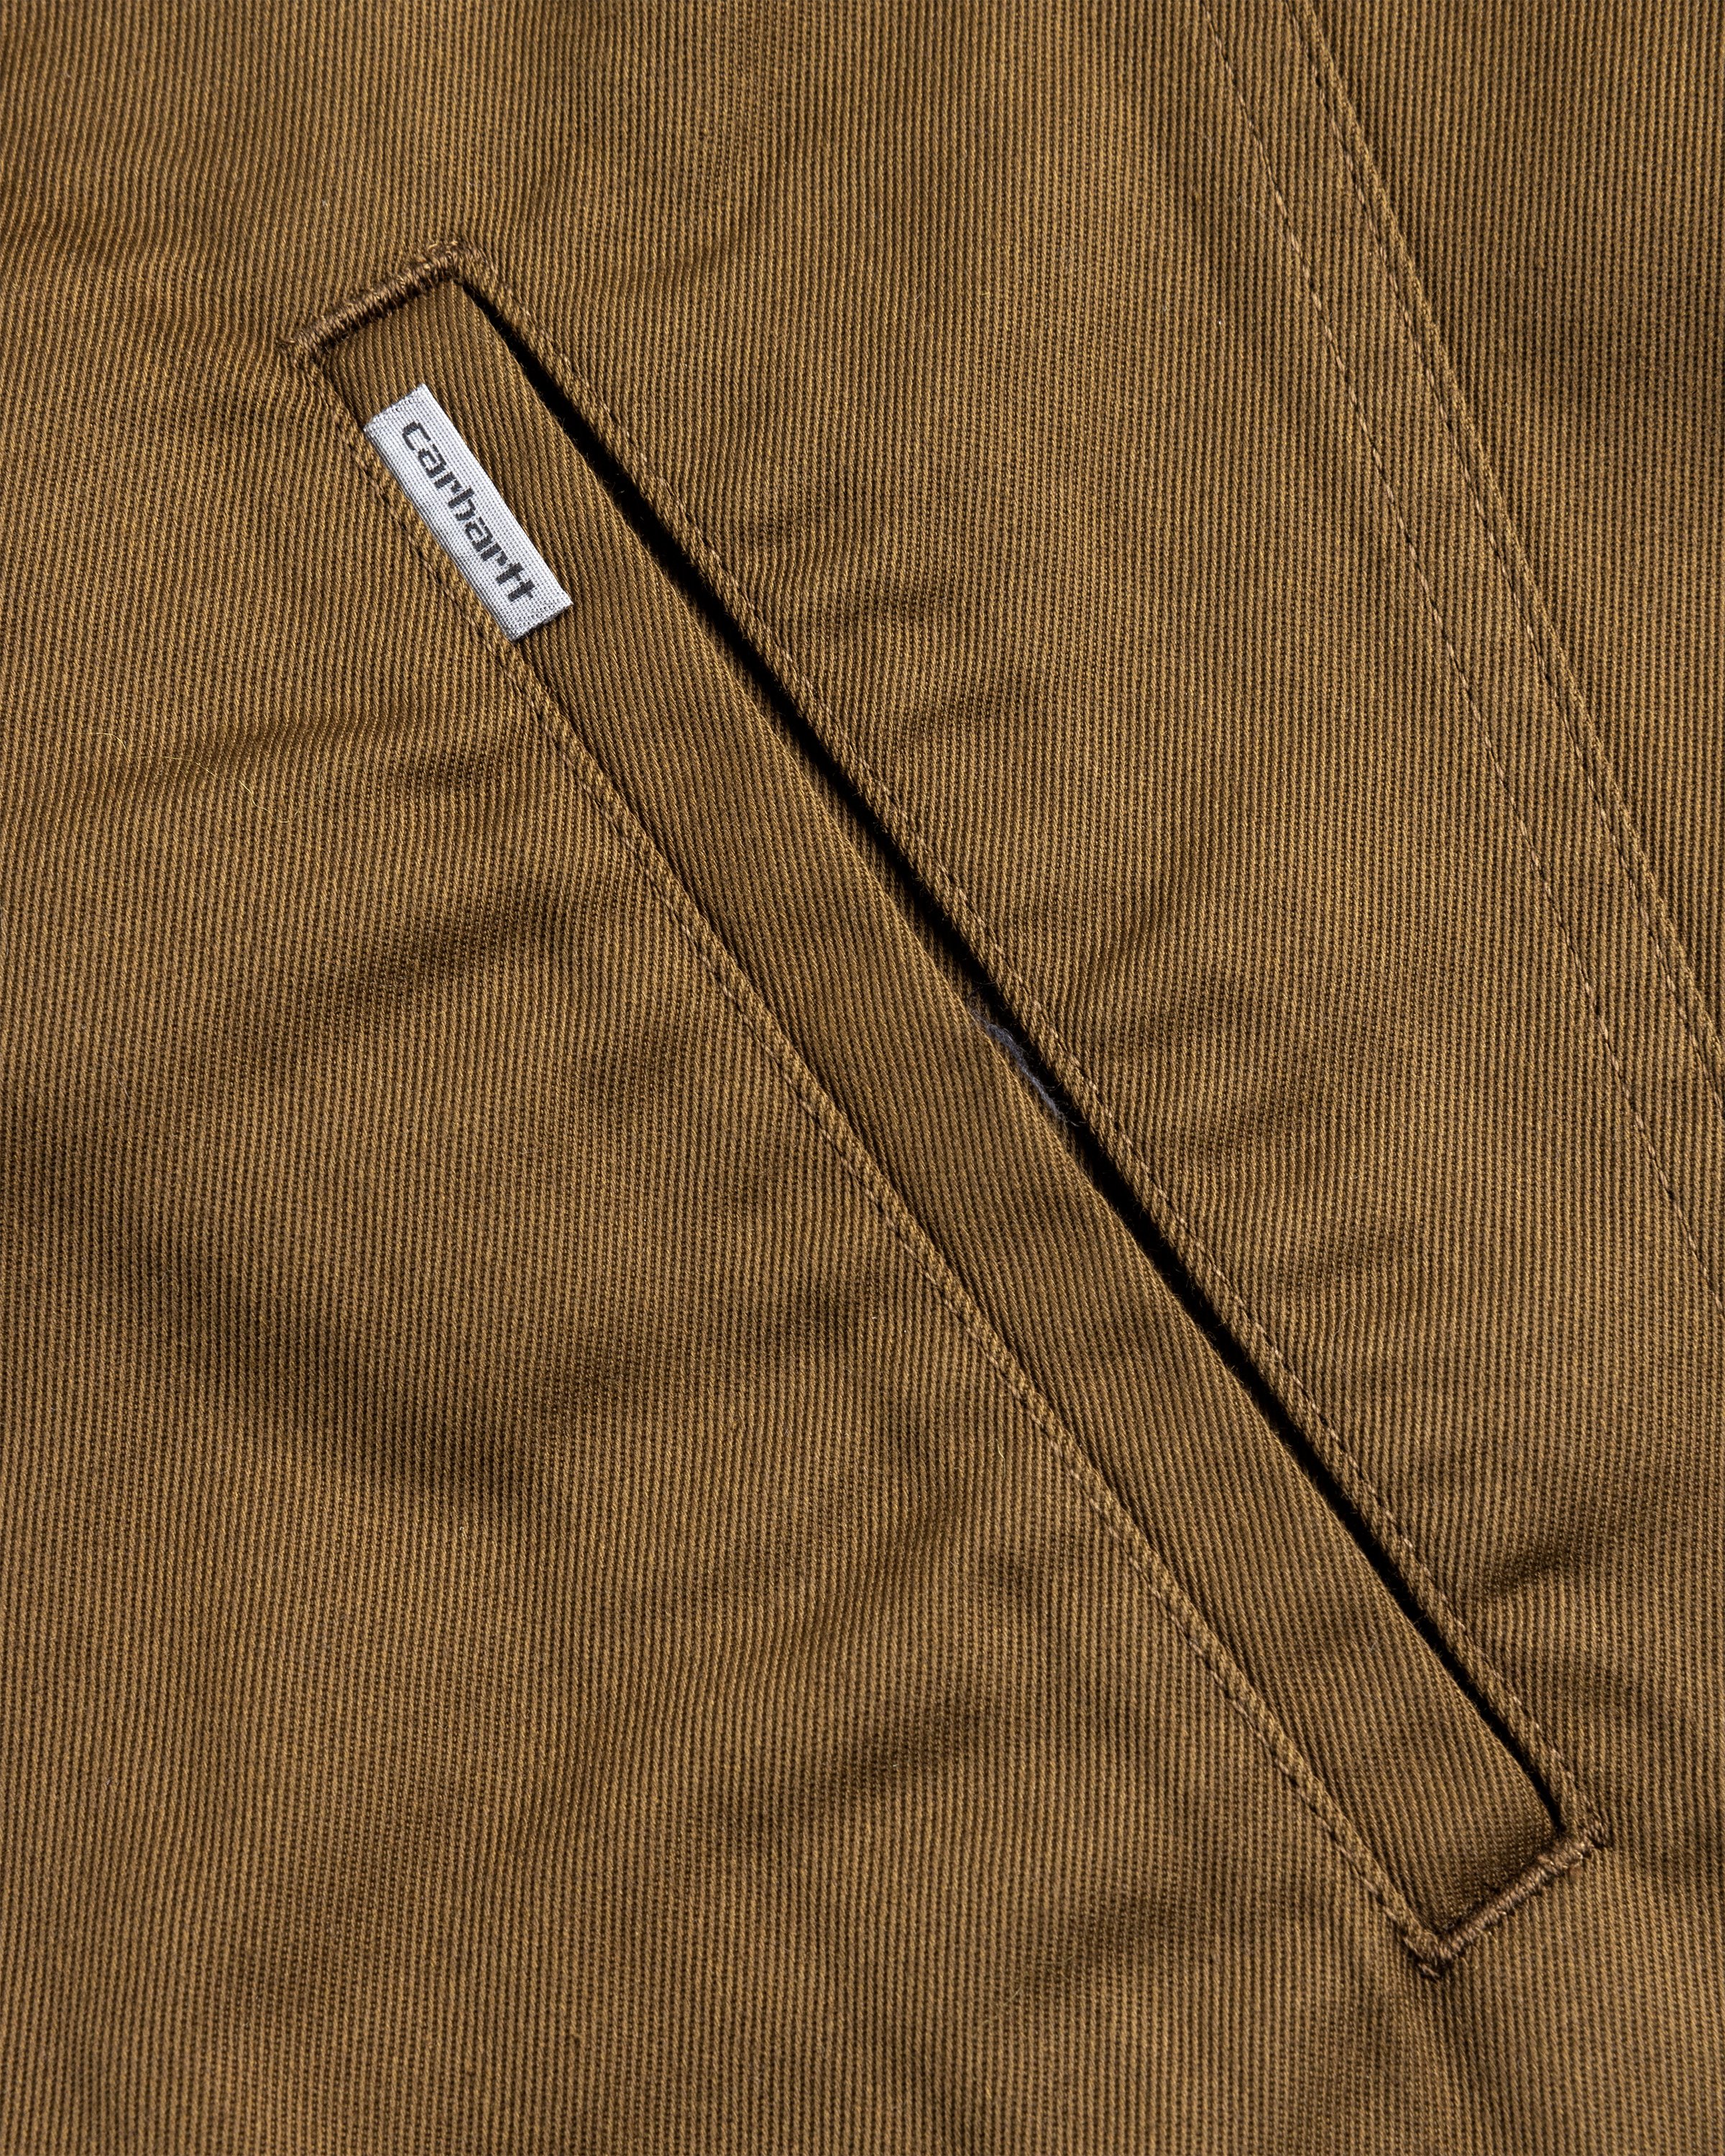 Carhartt WIP - Modular Jacket Lumber /rinsed - Clothing - Brown - Image 7